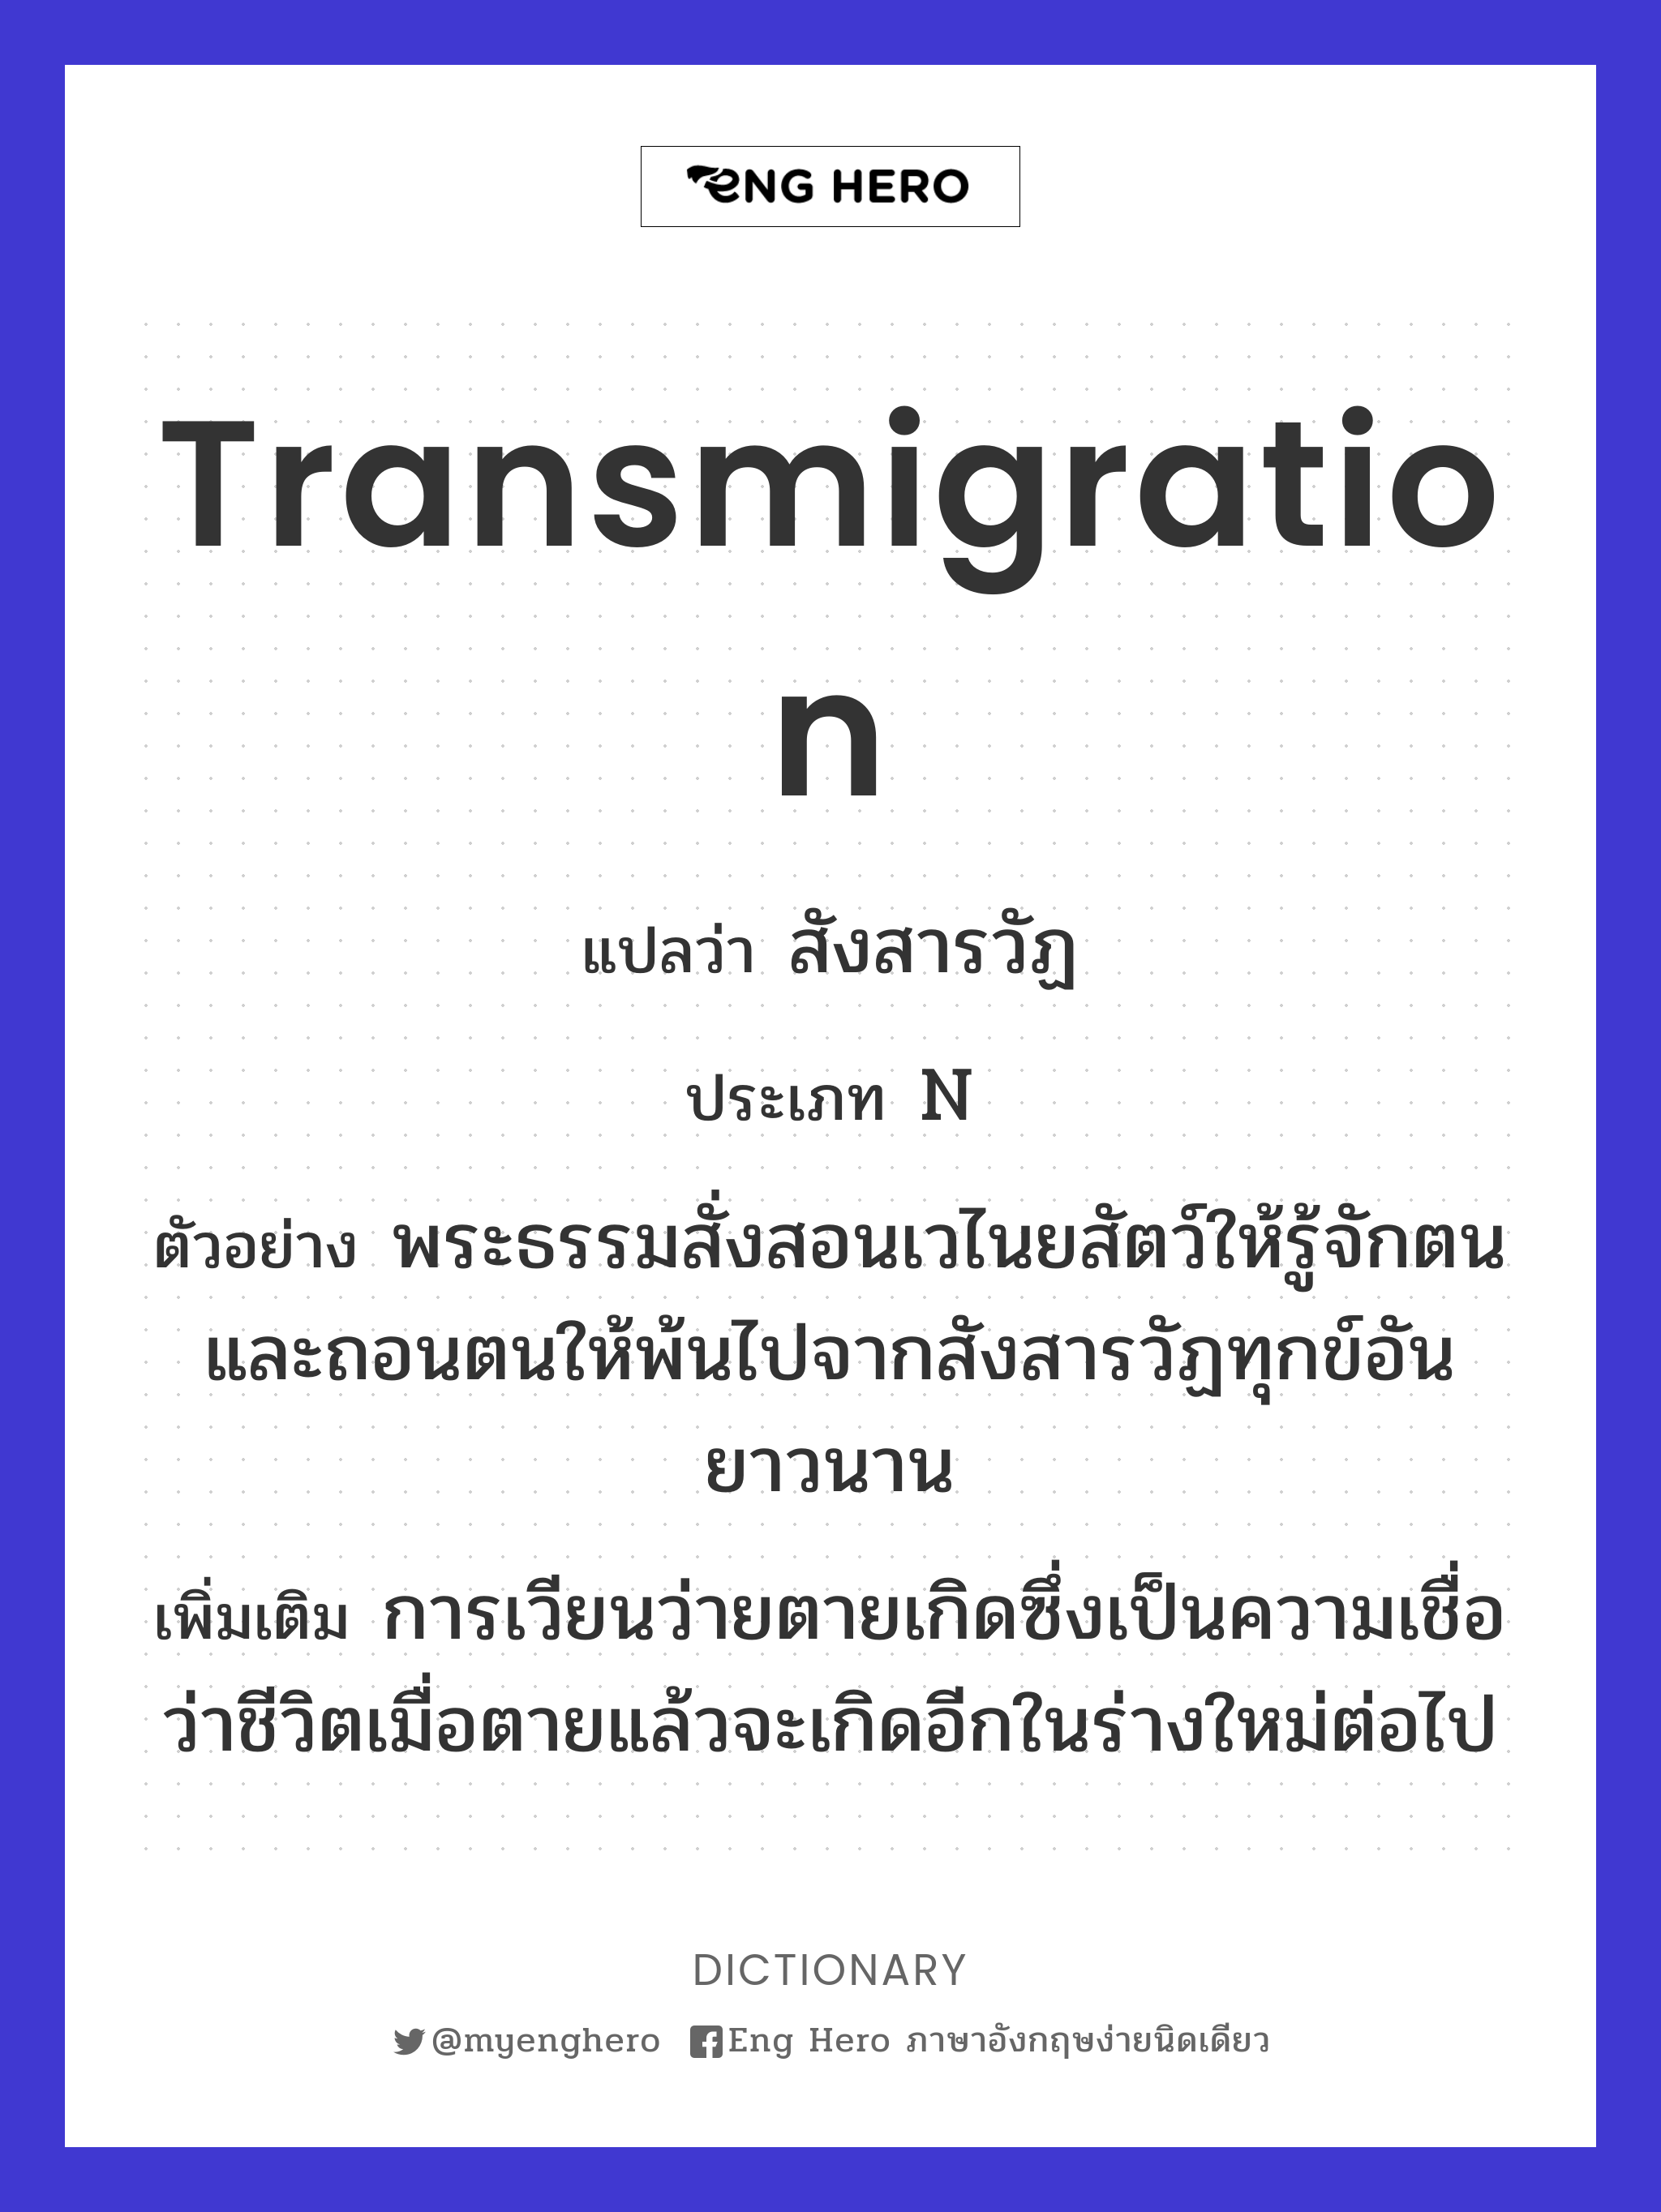 transmigration